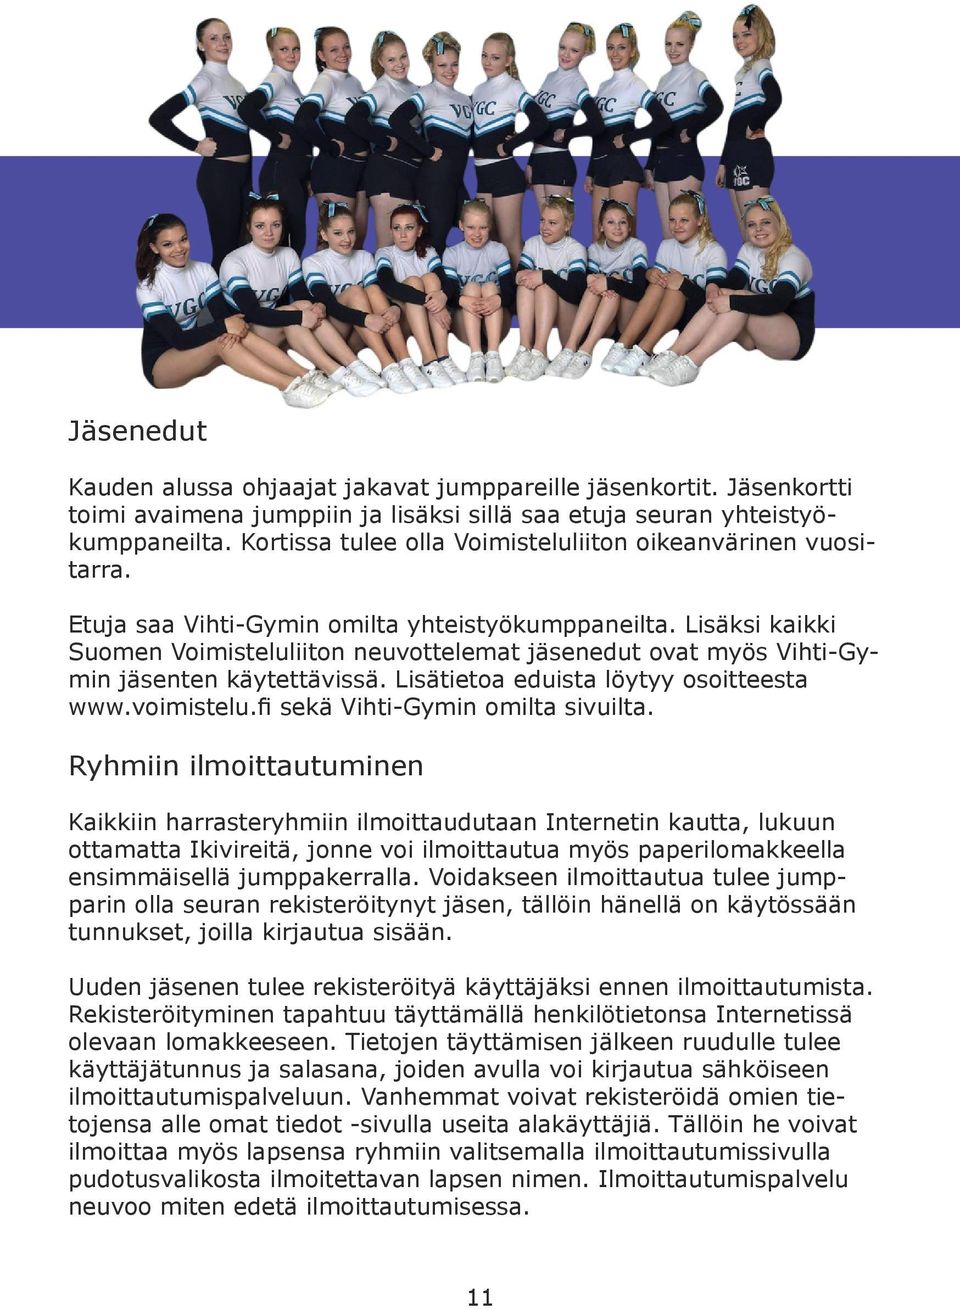 Lisäksi kaikki Suomen Voimisteluliiton neuvottelemat jäsenedut ovat myös Vihti-Gymin jäsenten käytettävissä. Lisätietoa eduista löytyy osoitteesta www.voimistelu.fi sekä Vihti-Gymin omilta sivuilta.